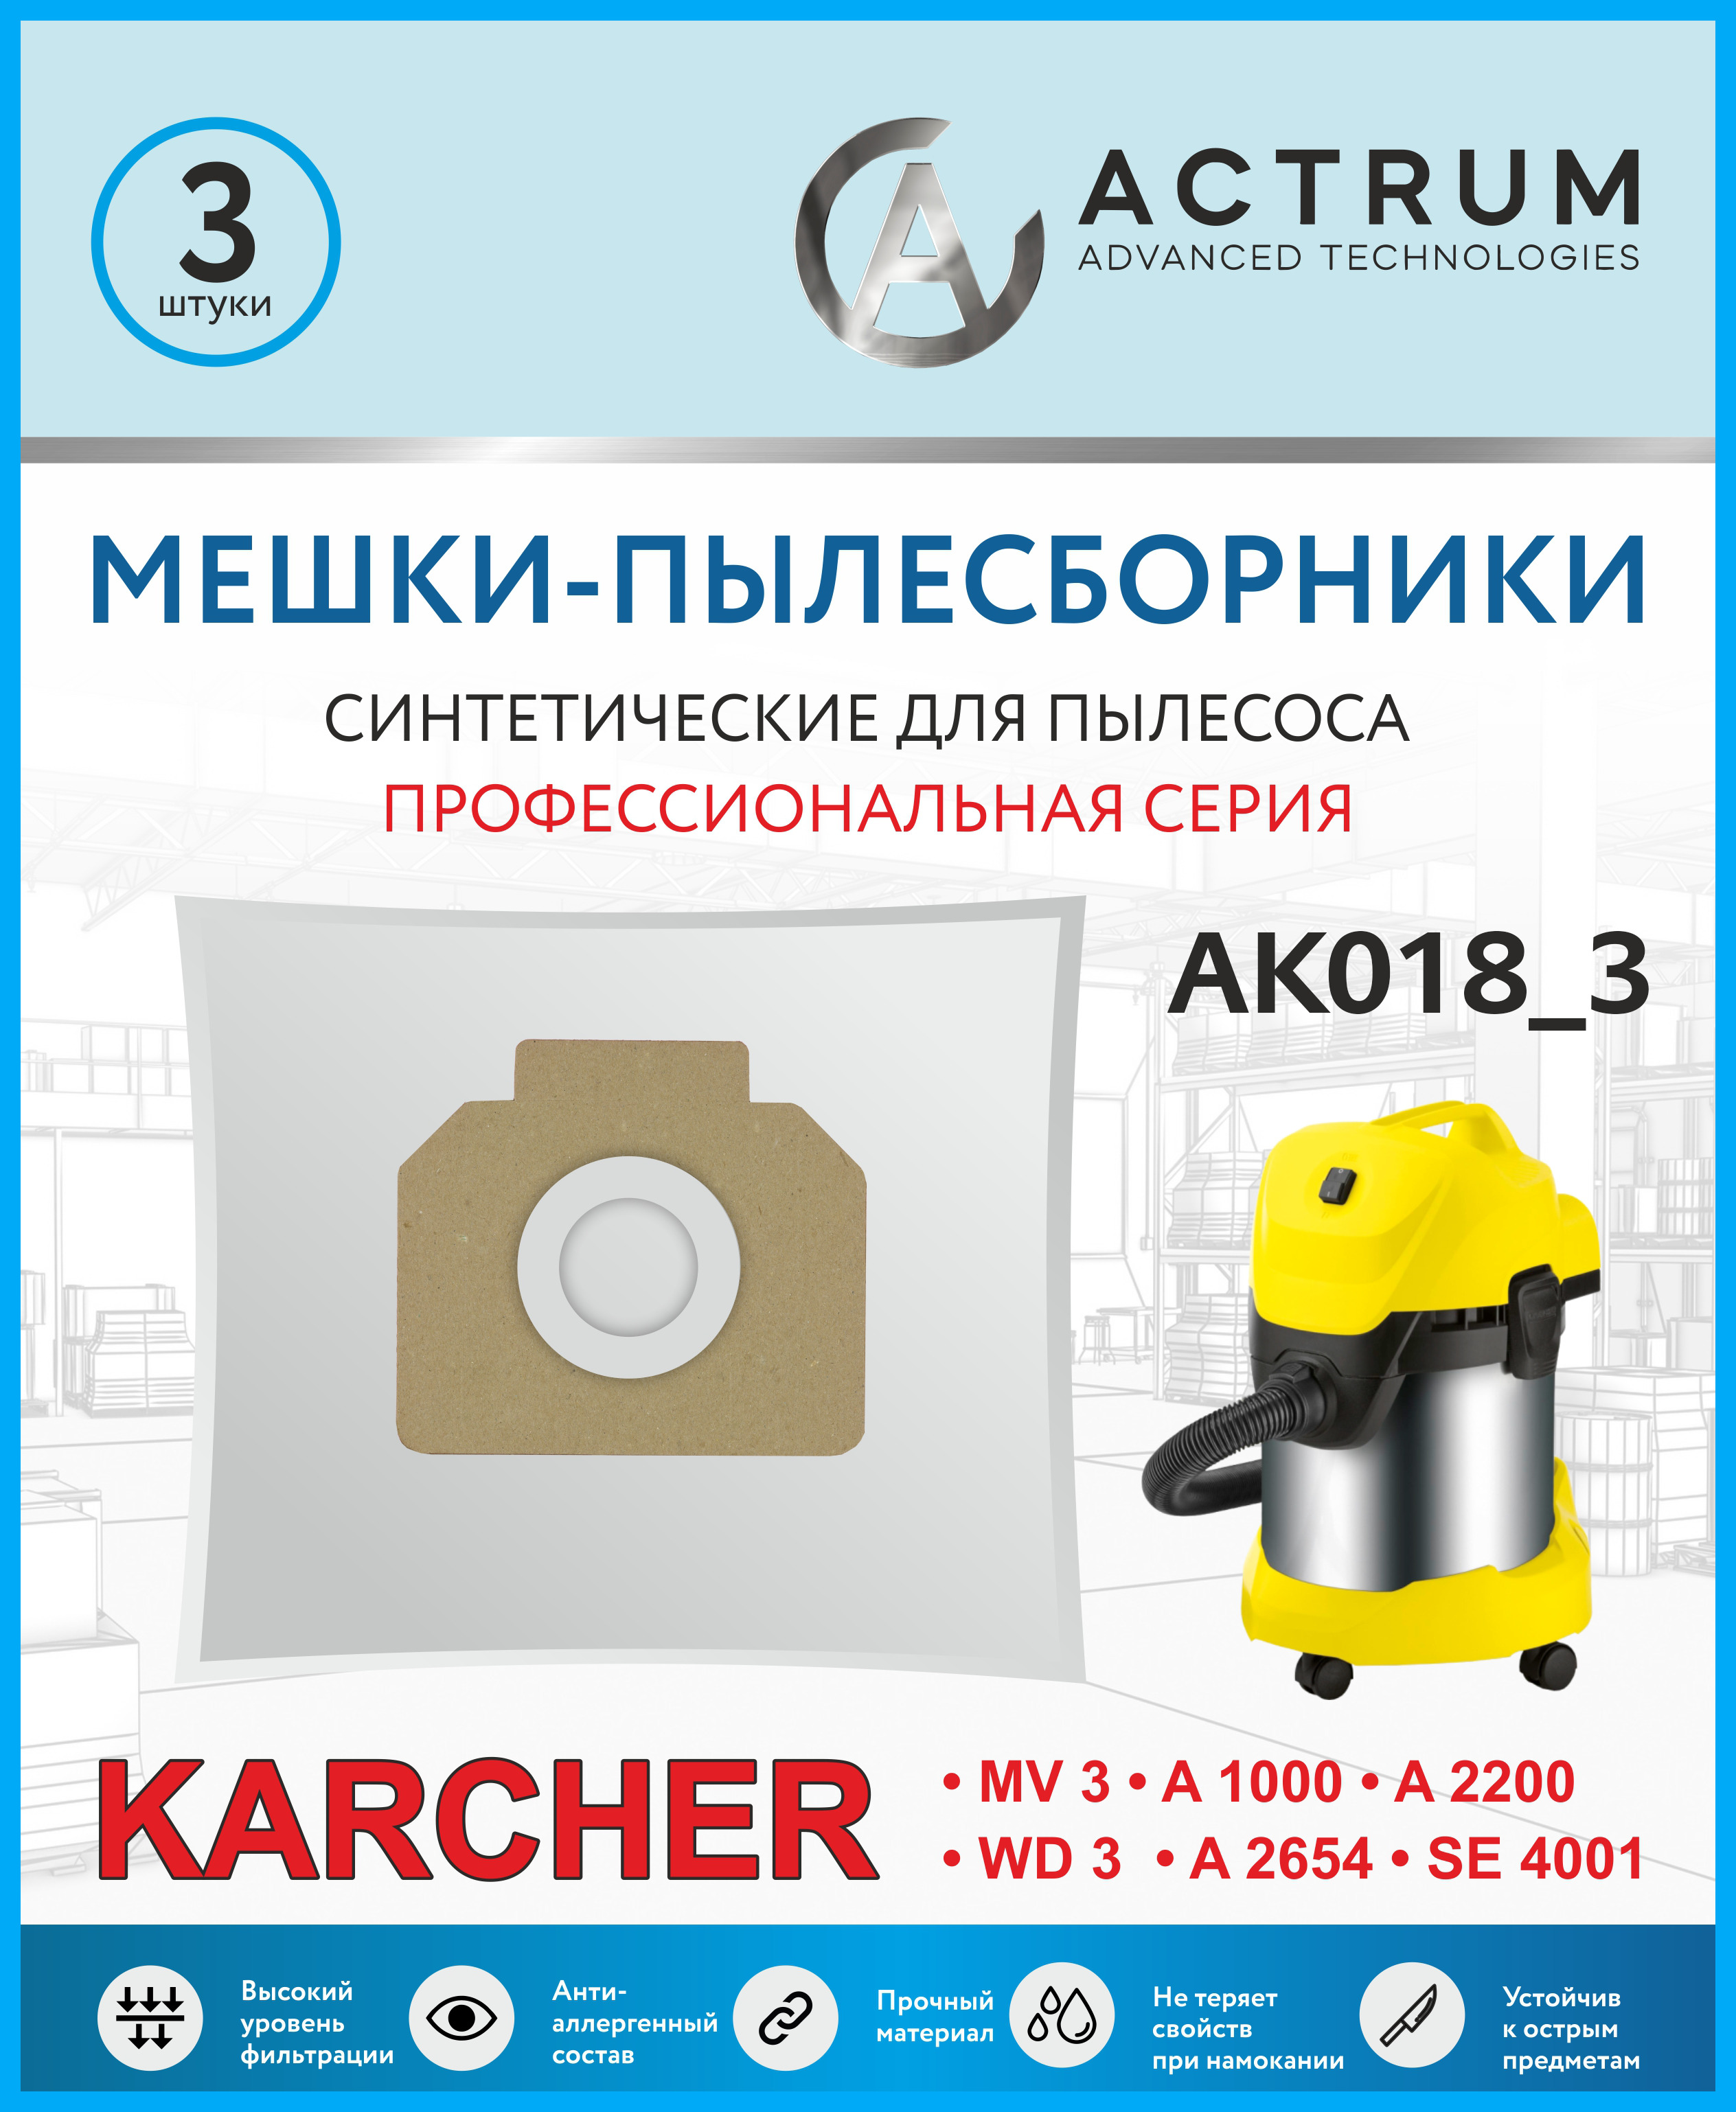 Пылесборник ACTRUM AK018_3 fifa 22 ps5